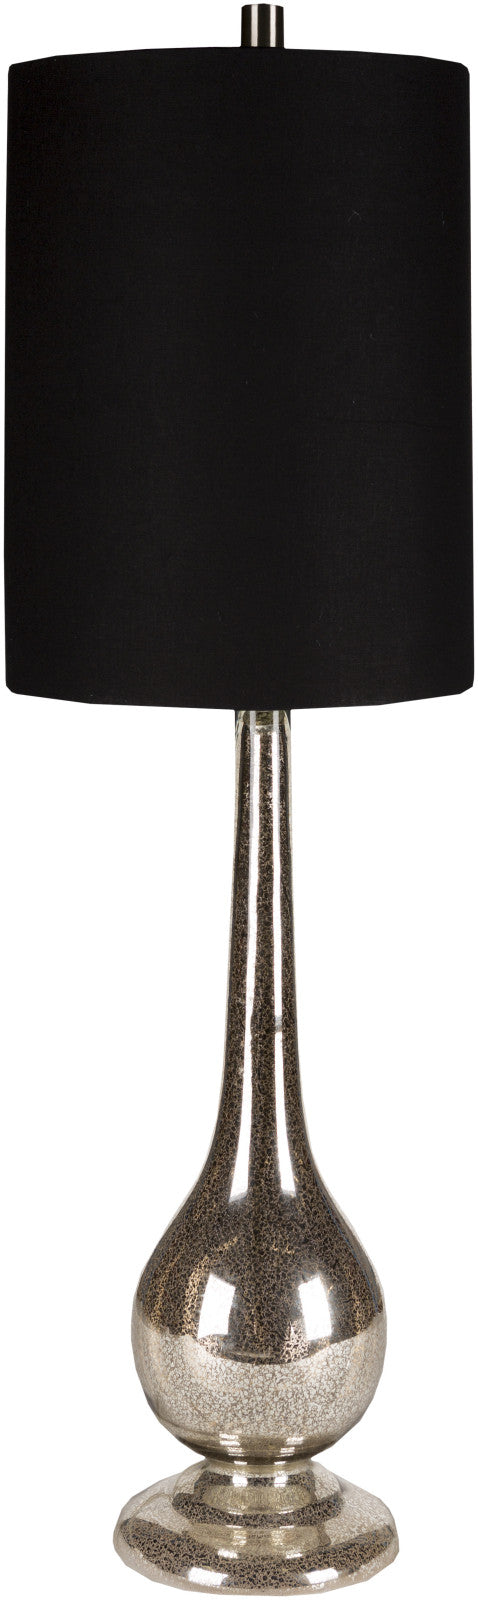 Surya Glass LMP-1023 Black Lamp Table Lamp